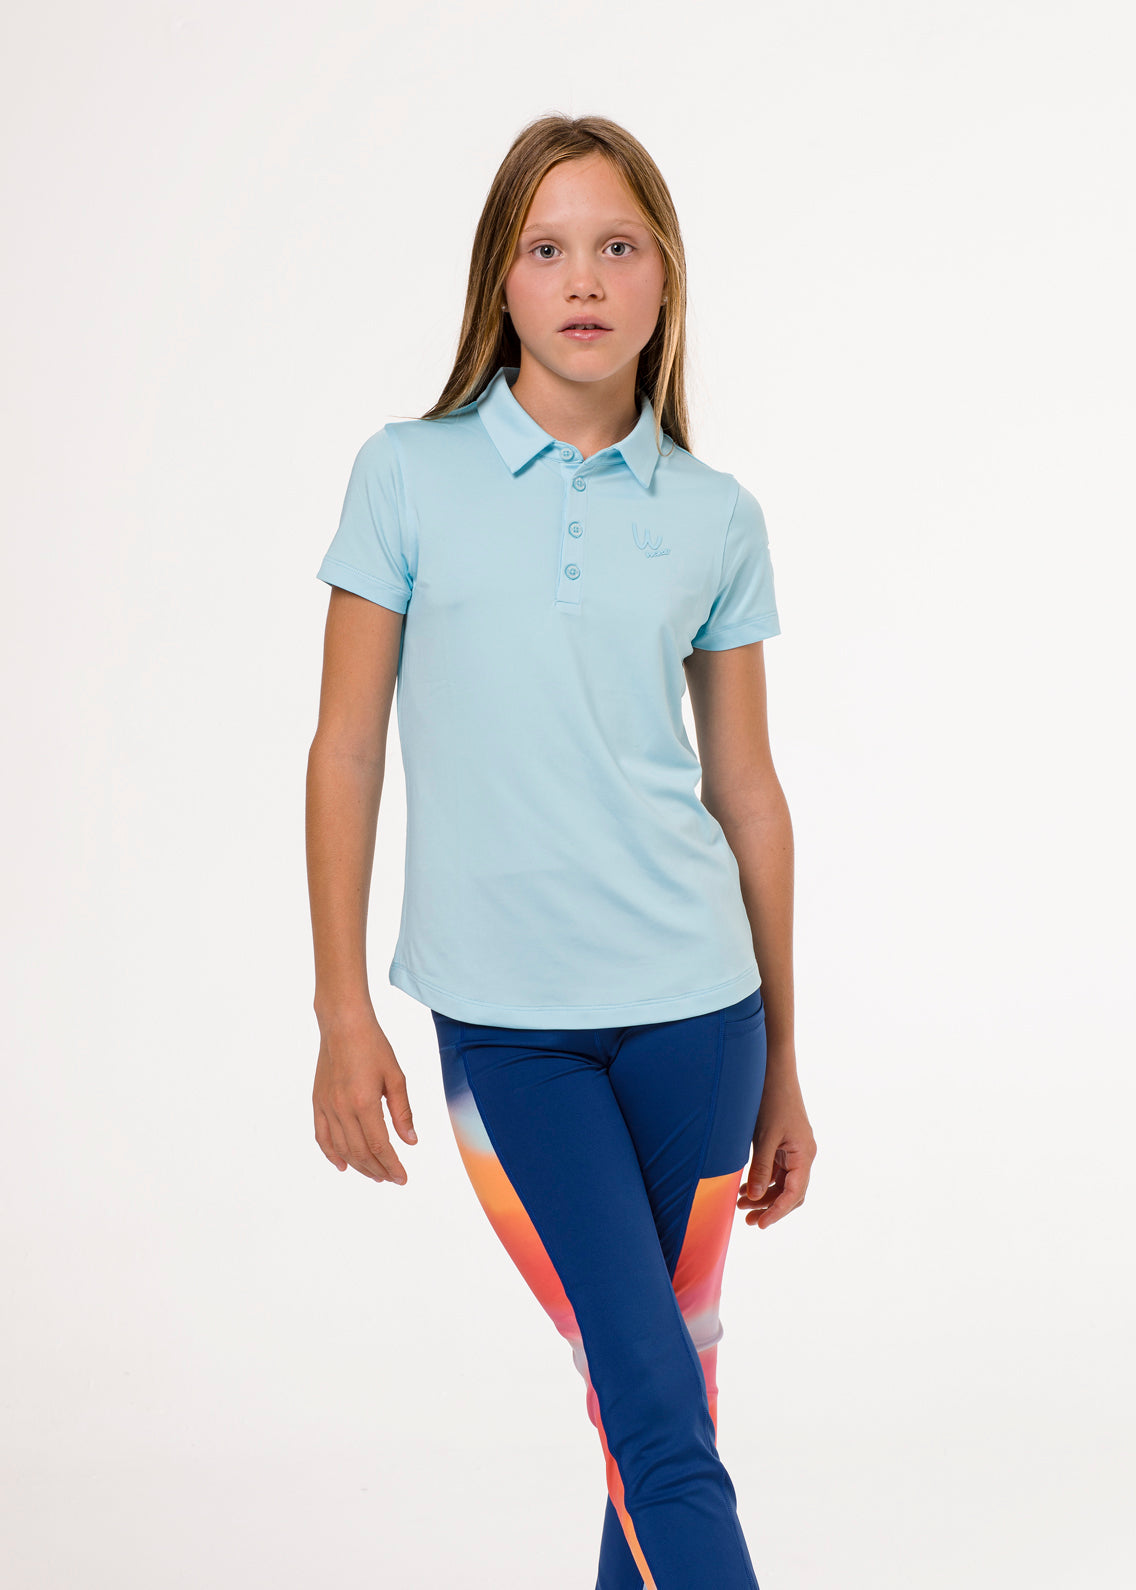 Light blue golf polo shirt for girls